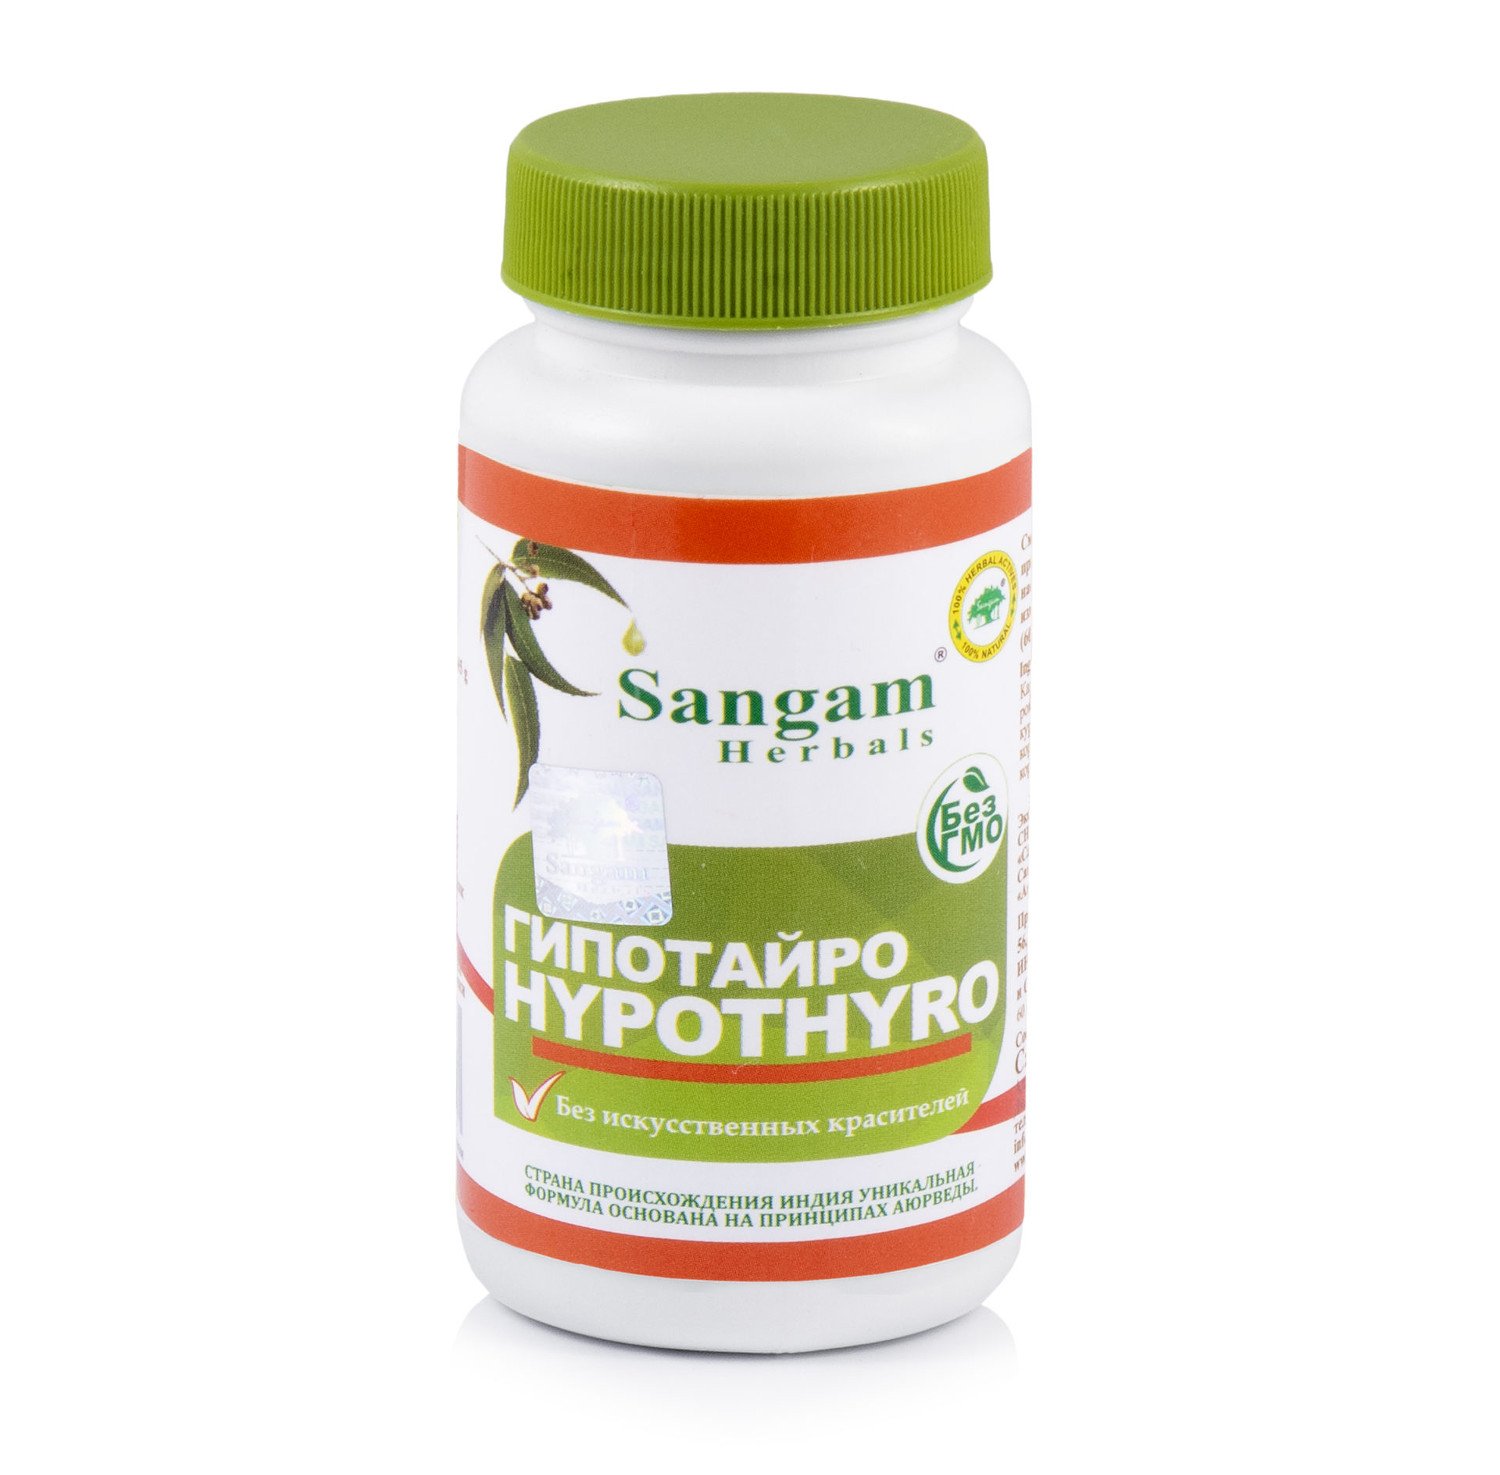 Гипотайро Sangam Herbals (60 таблеток). 